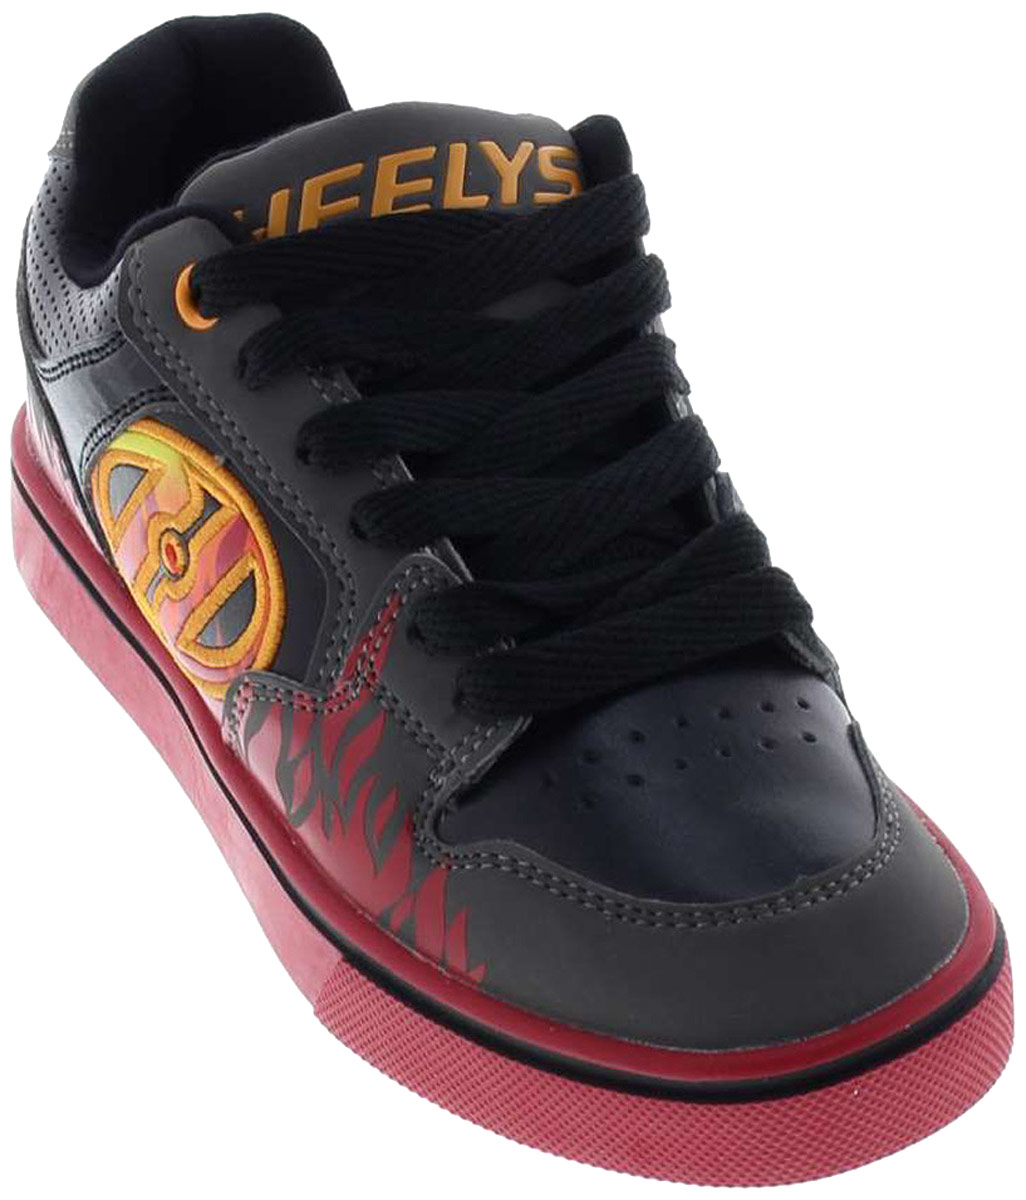 Кроссовки роликовые для мальчика Heelys Motion Plus, цвет: серый, красный. 770815. Размер 13С (30)